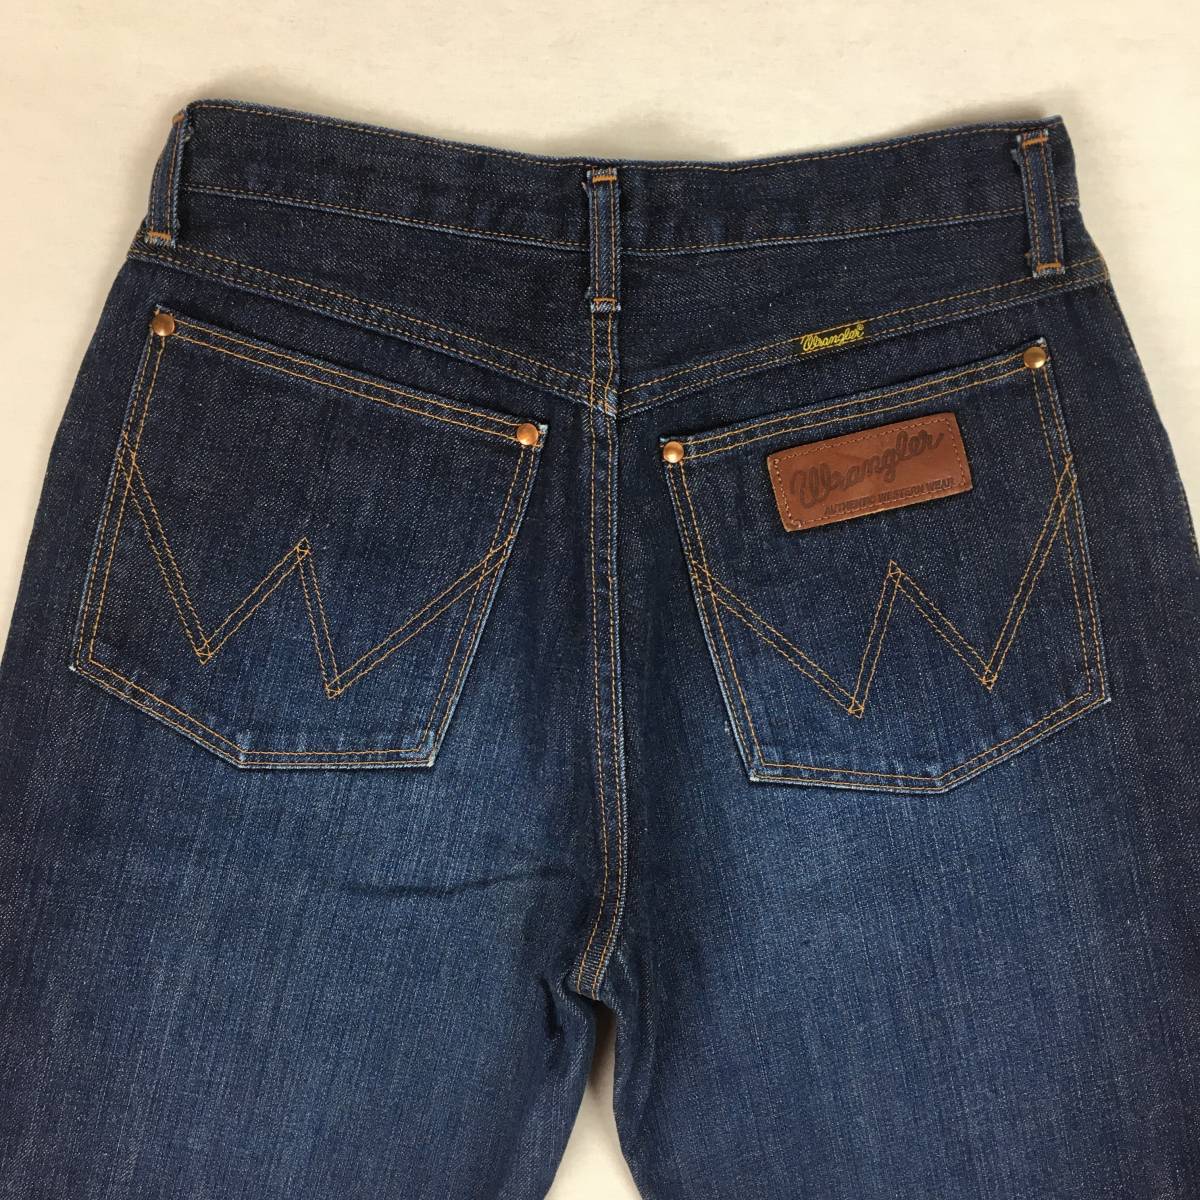 Wrangler Wrangler F1708-79 сделано в Японии широкий распорка Denim брюки джинсы размер 31-4 Zip fly cell bichi кожа patch 